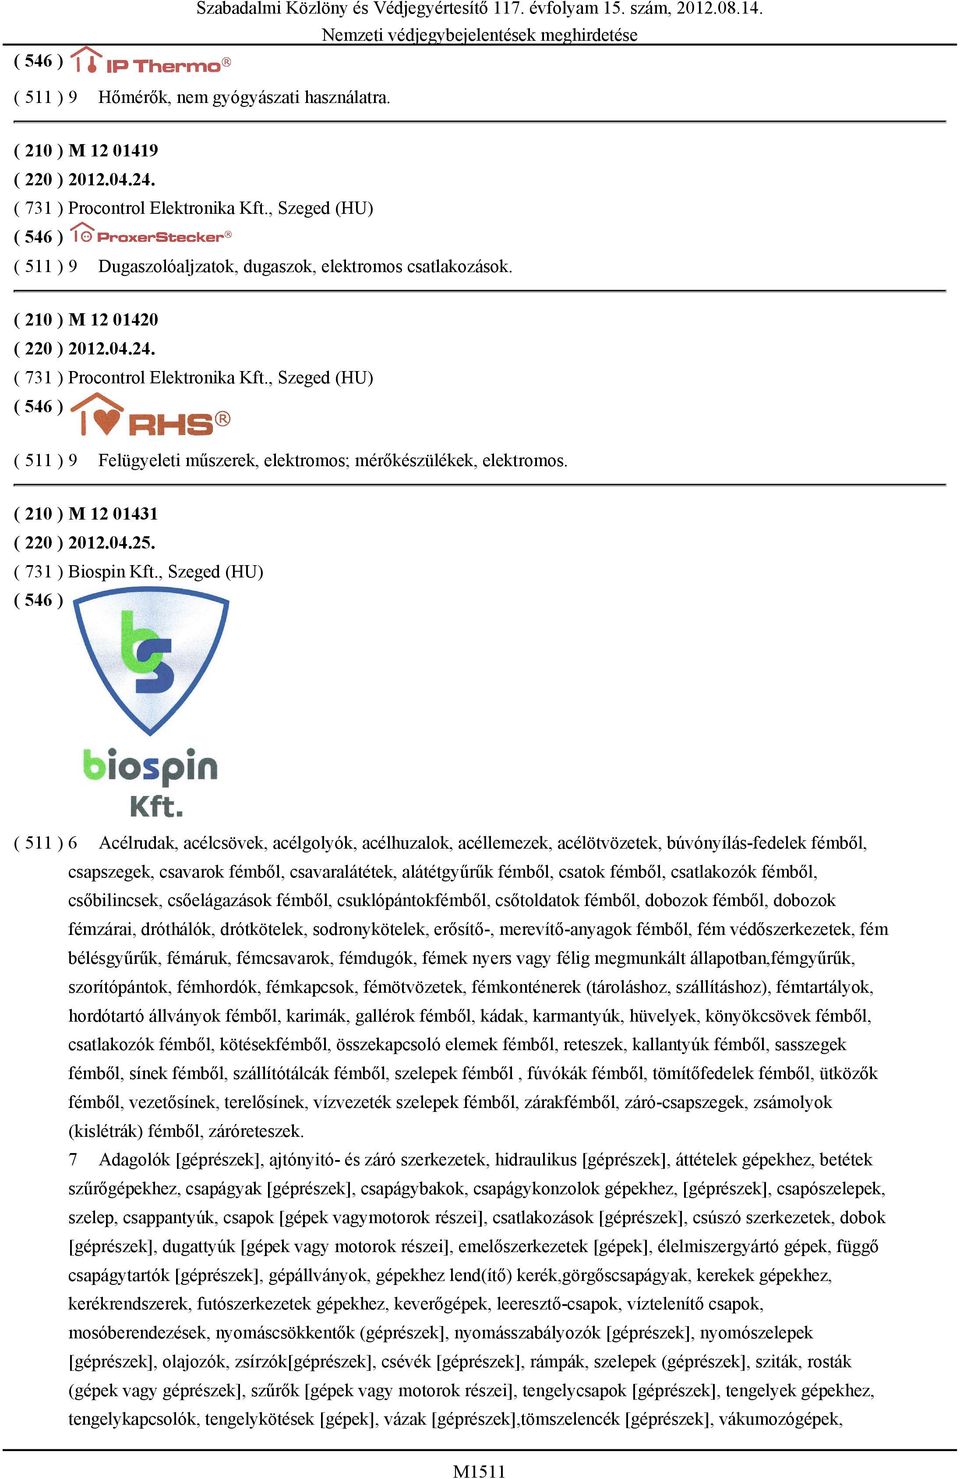 , Szeged (HU) ( 511 ) 9 Felügyeleti műszerek, elektromos; mérőkészülékek, elektromos. ( 210 ) M 12 01431 ( 220 ) 2012.04.25. ( 731 ) Biospin Kft.